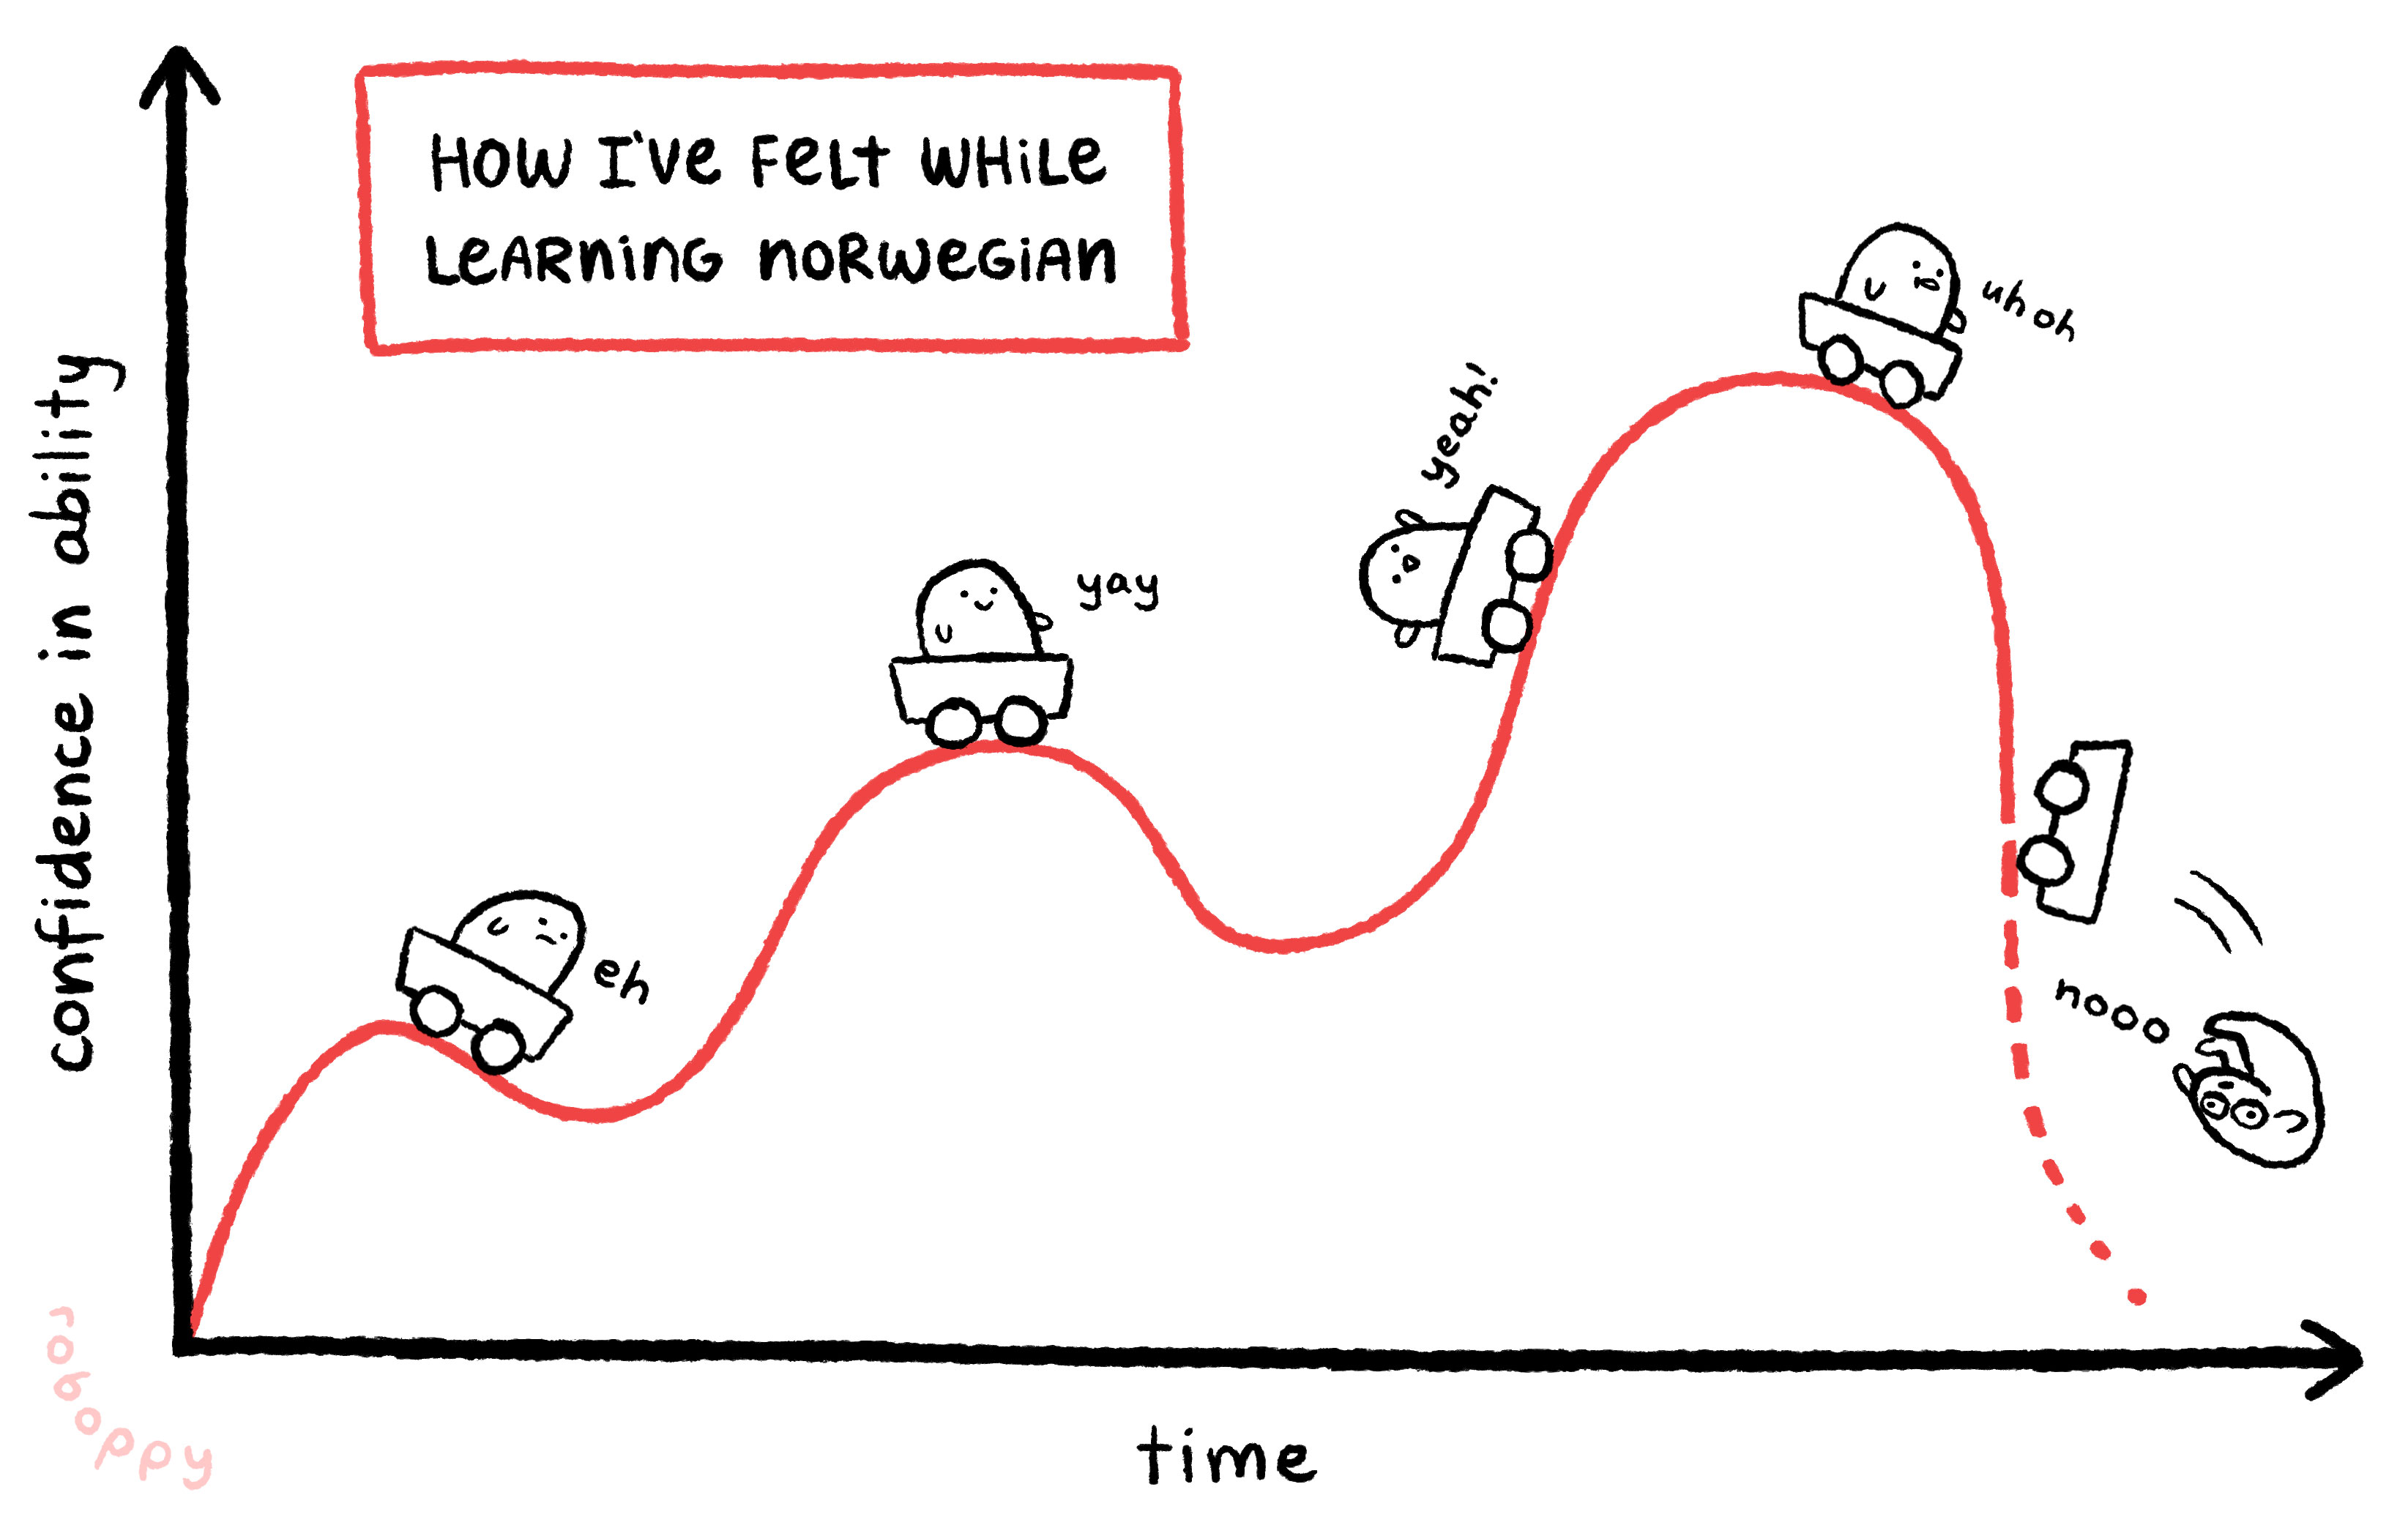 20181204-learning-norwegian-graph.jpg